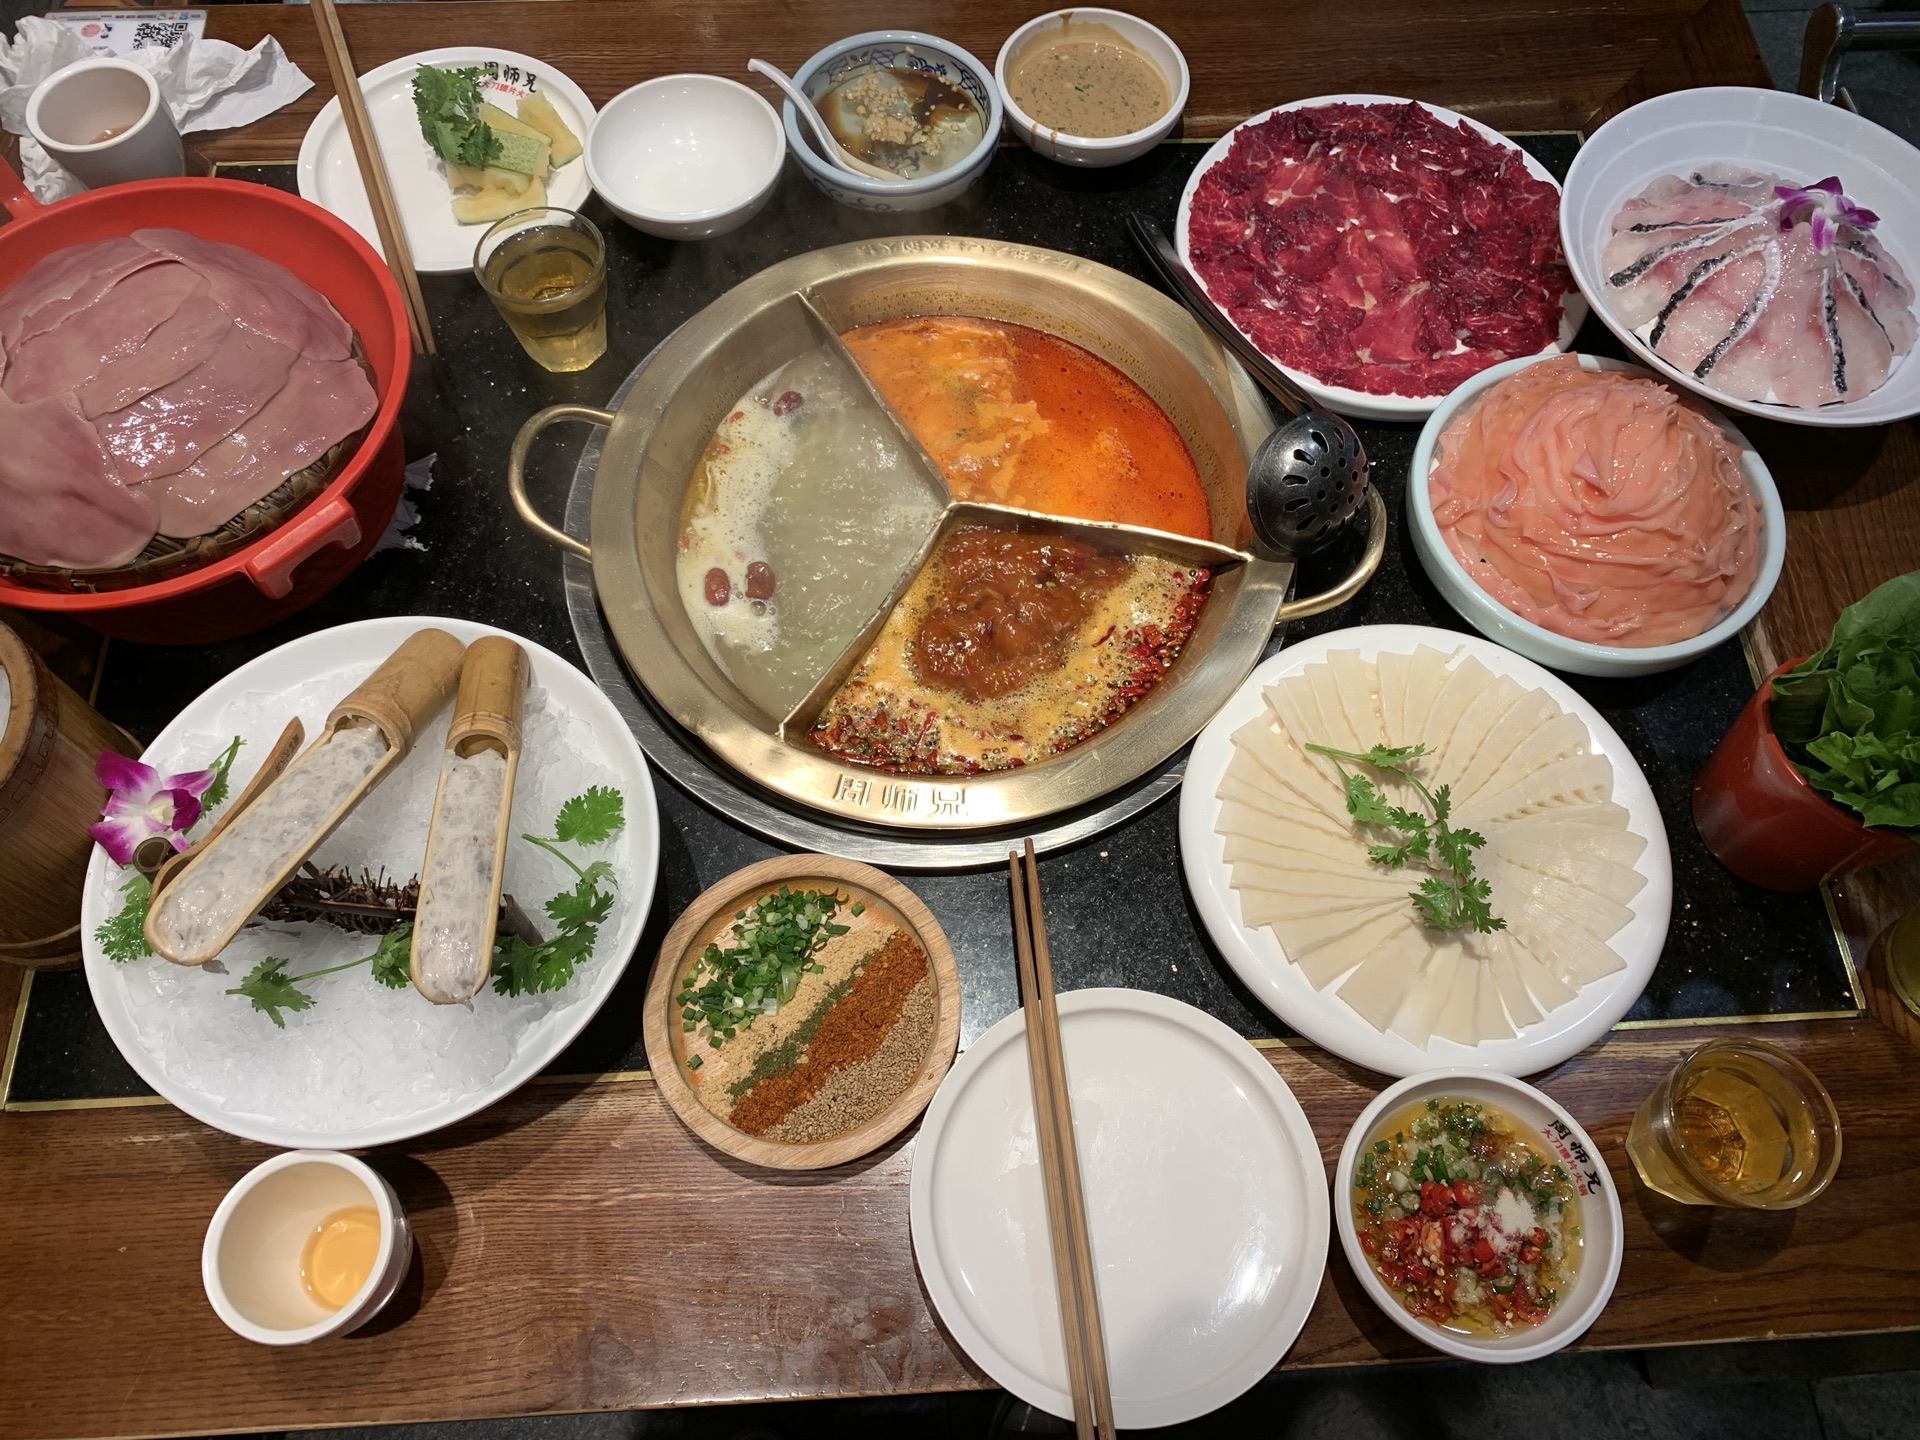 2019重庆火锅美食文化节时间 地点 门票 - 攻略 - 旅游攻略